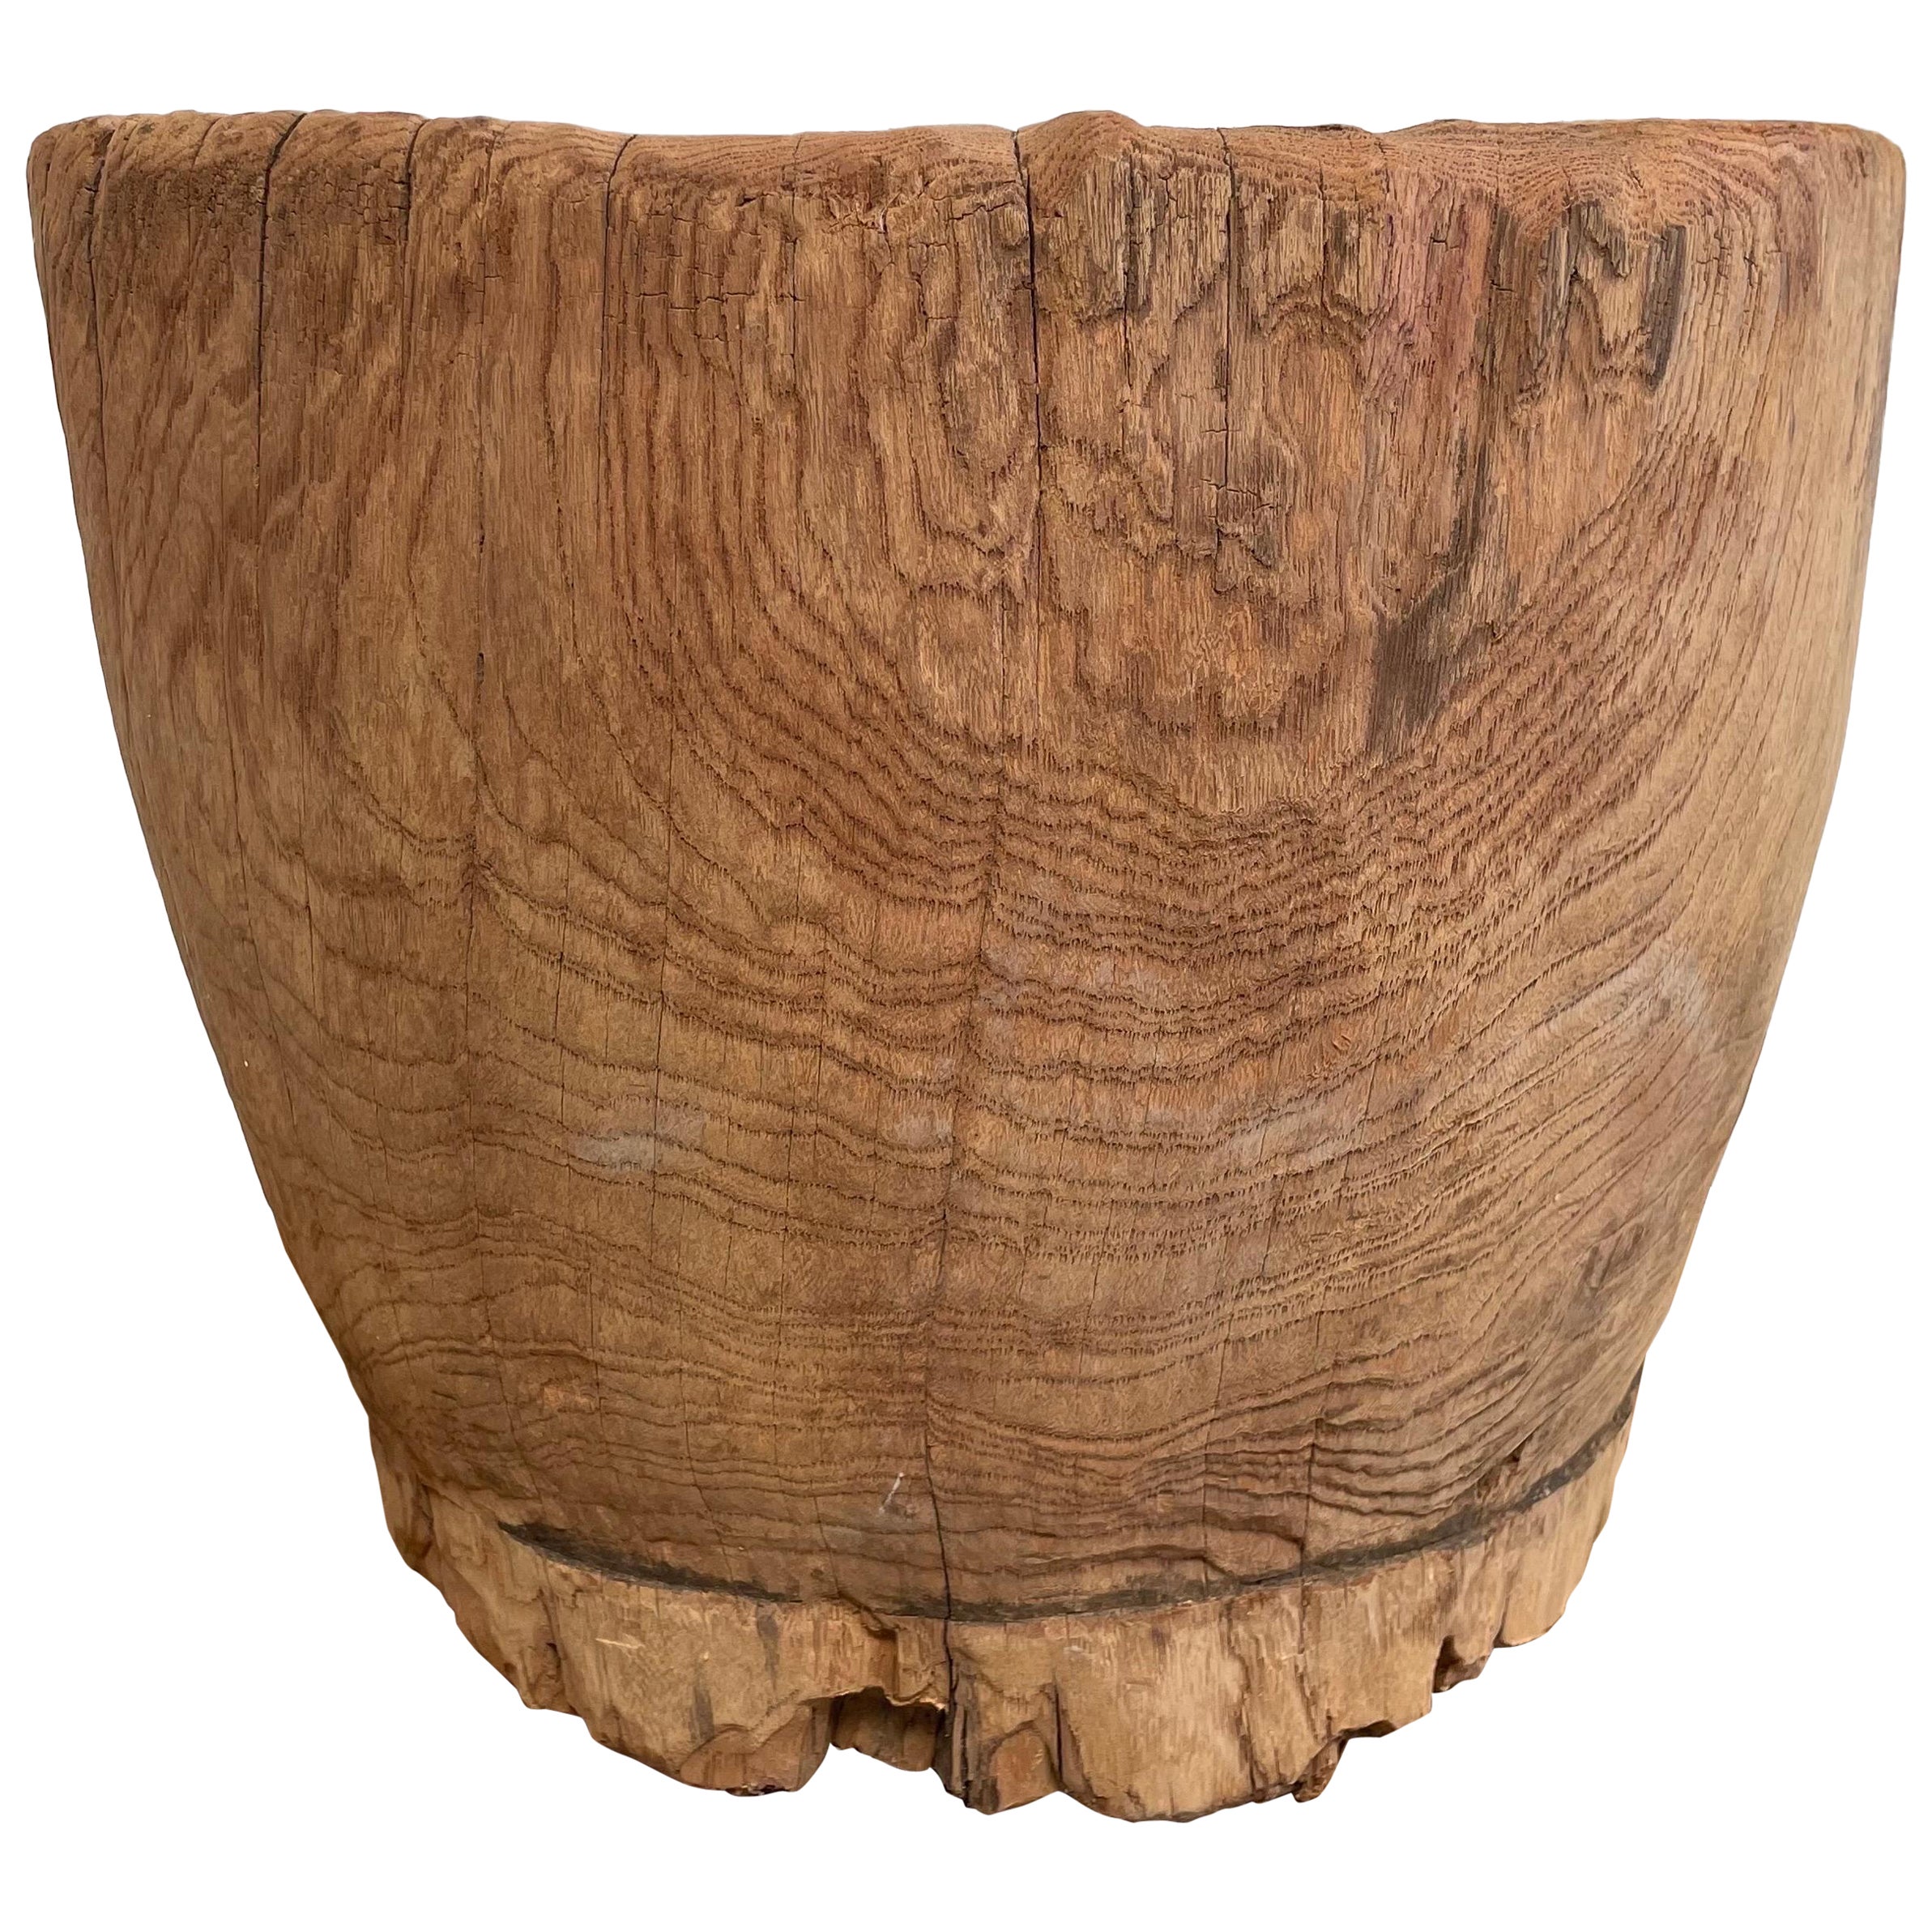 Dekorative Stumpfschale aus Holz